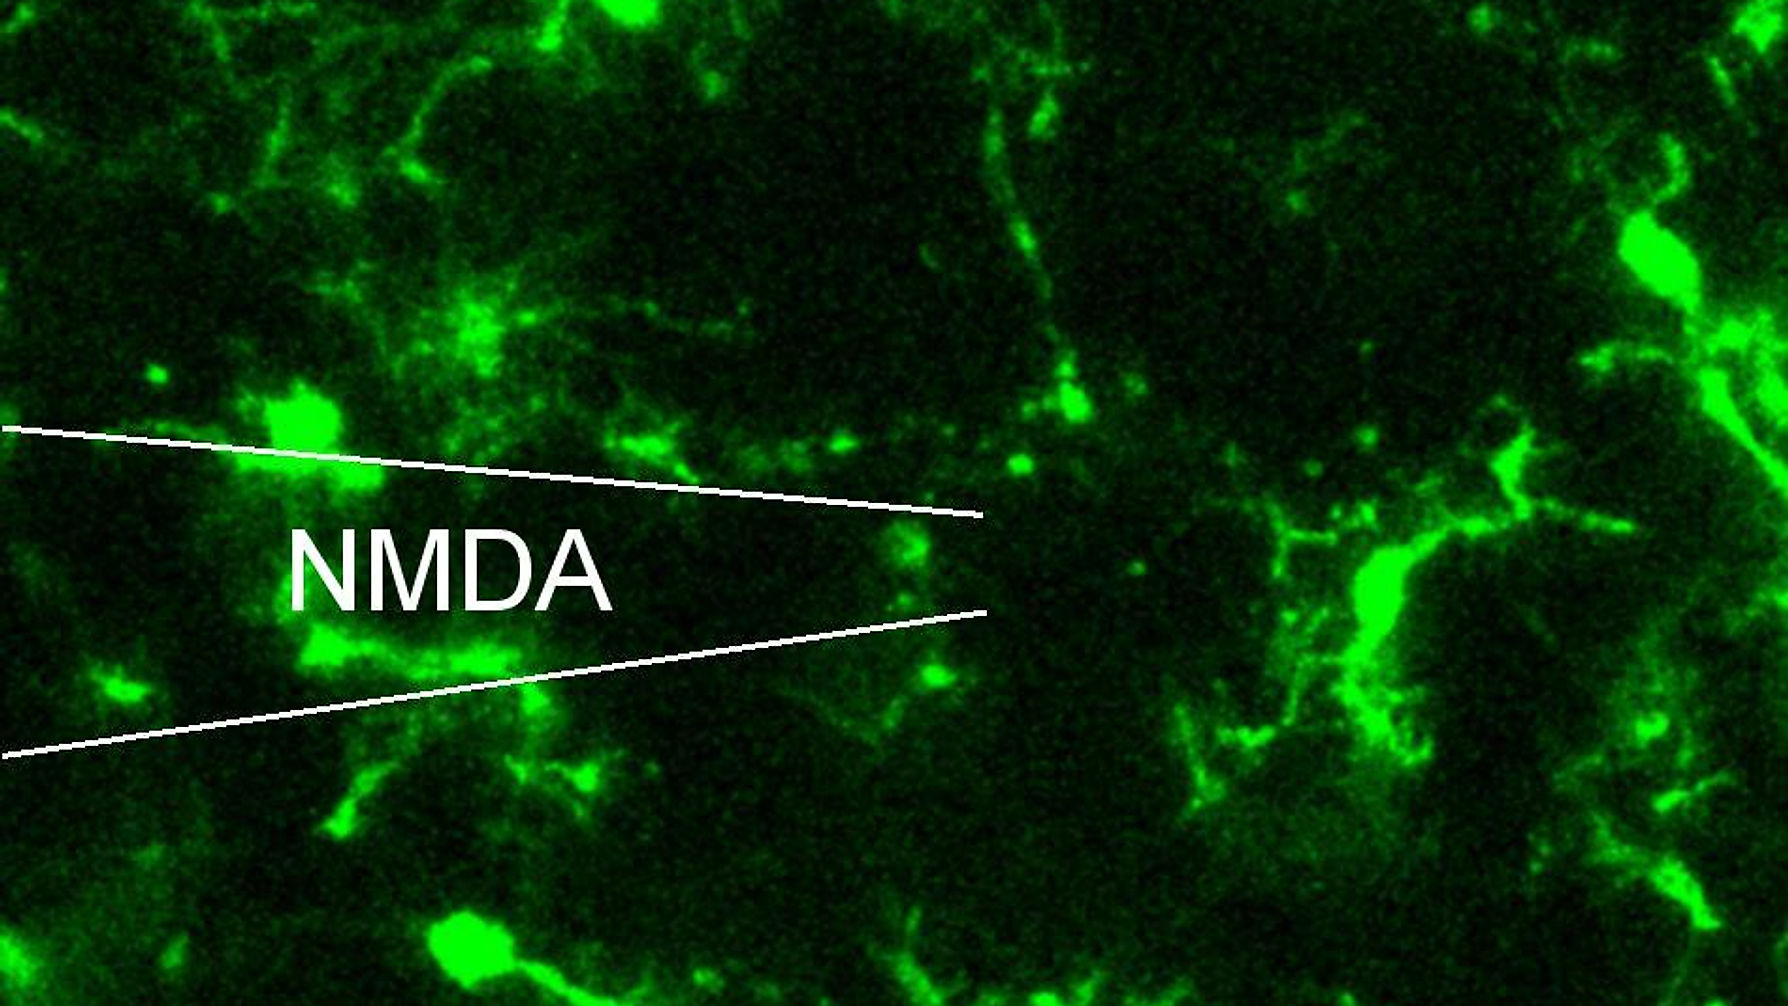 Microglia Respond by Chemotaxis to ATP but not NMDA